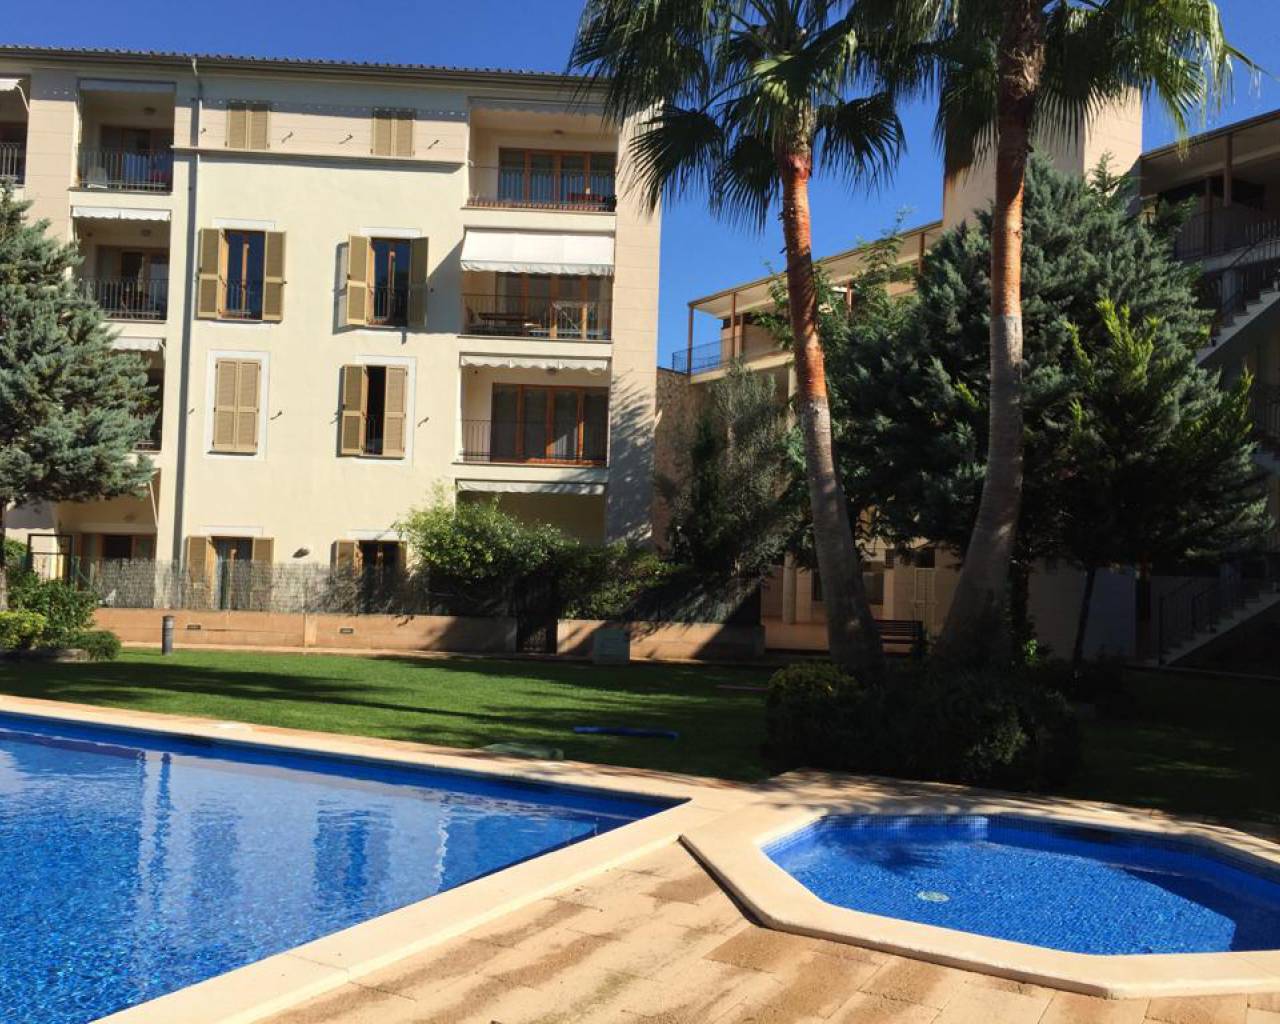 Duplex - For Rent - Palma de Mallorca - Palma De Mallorca